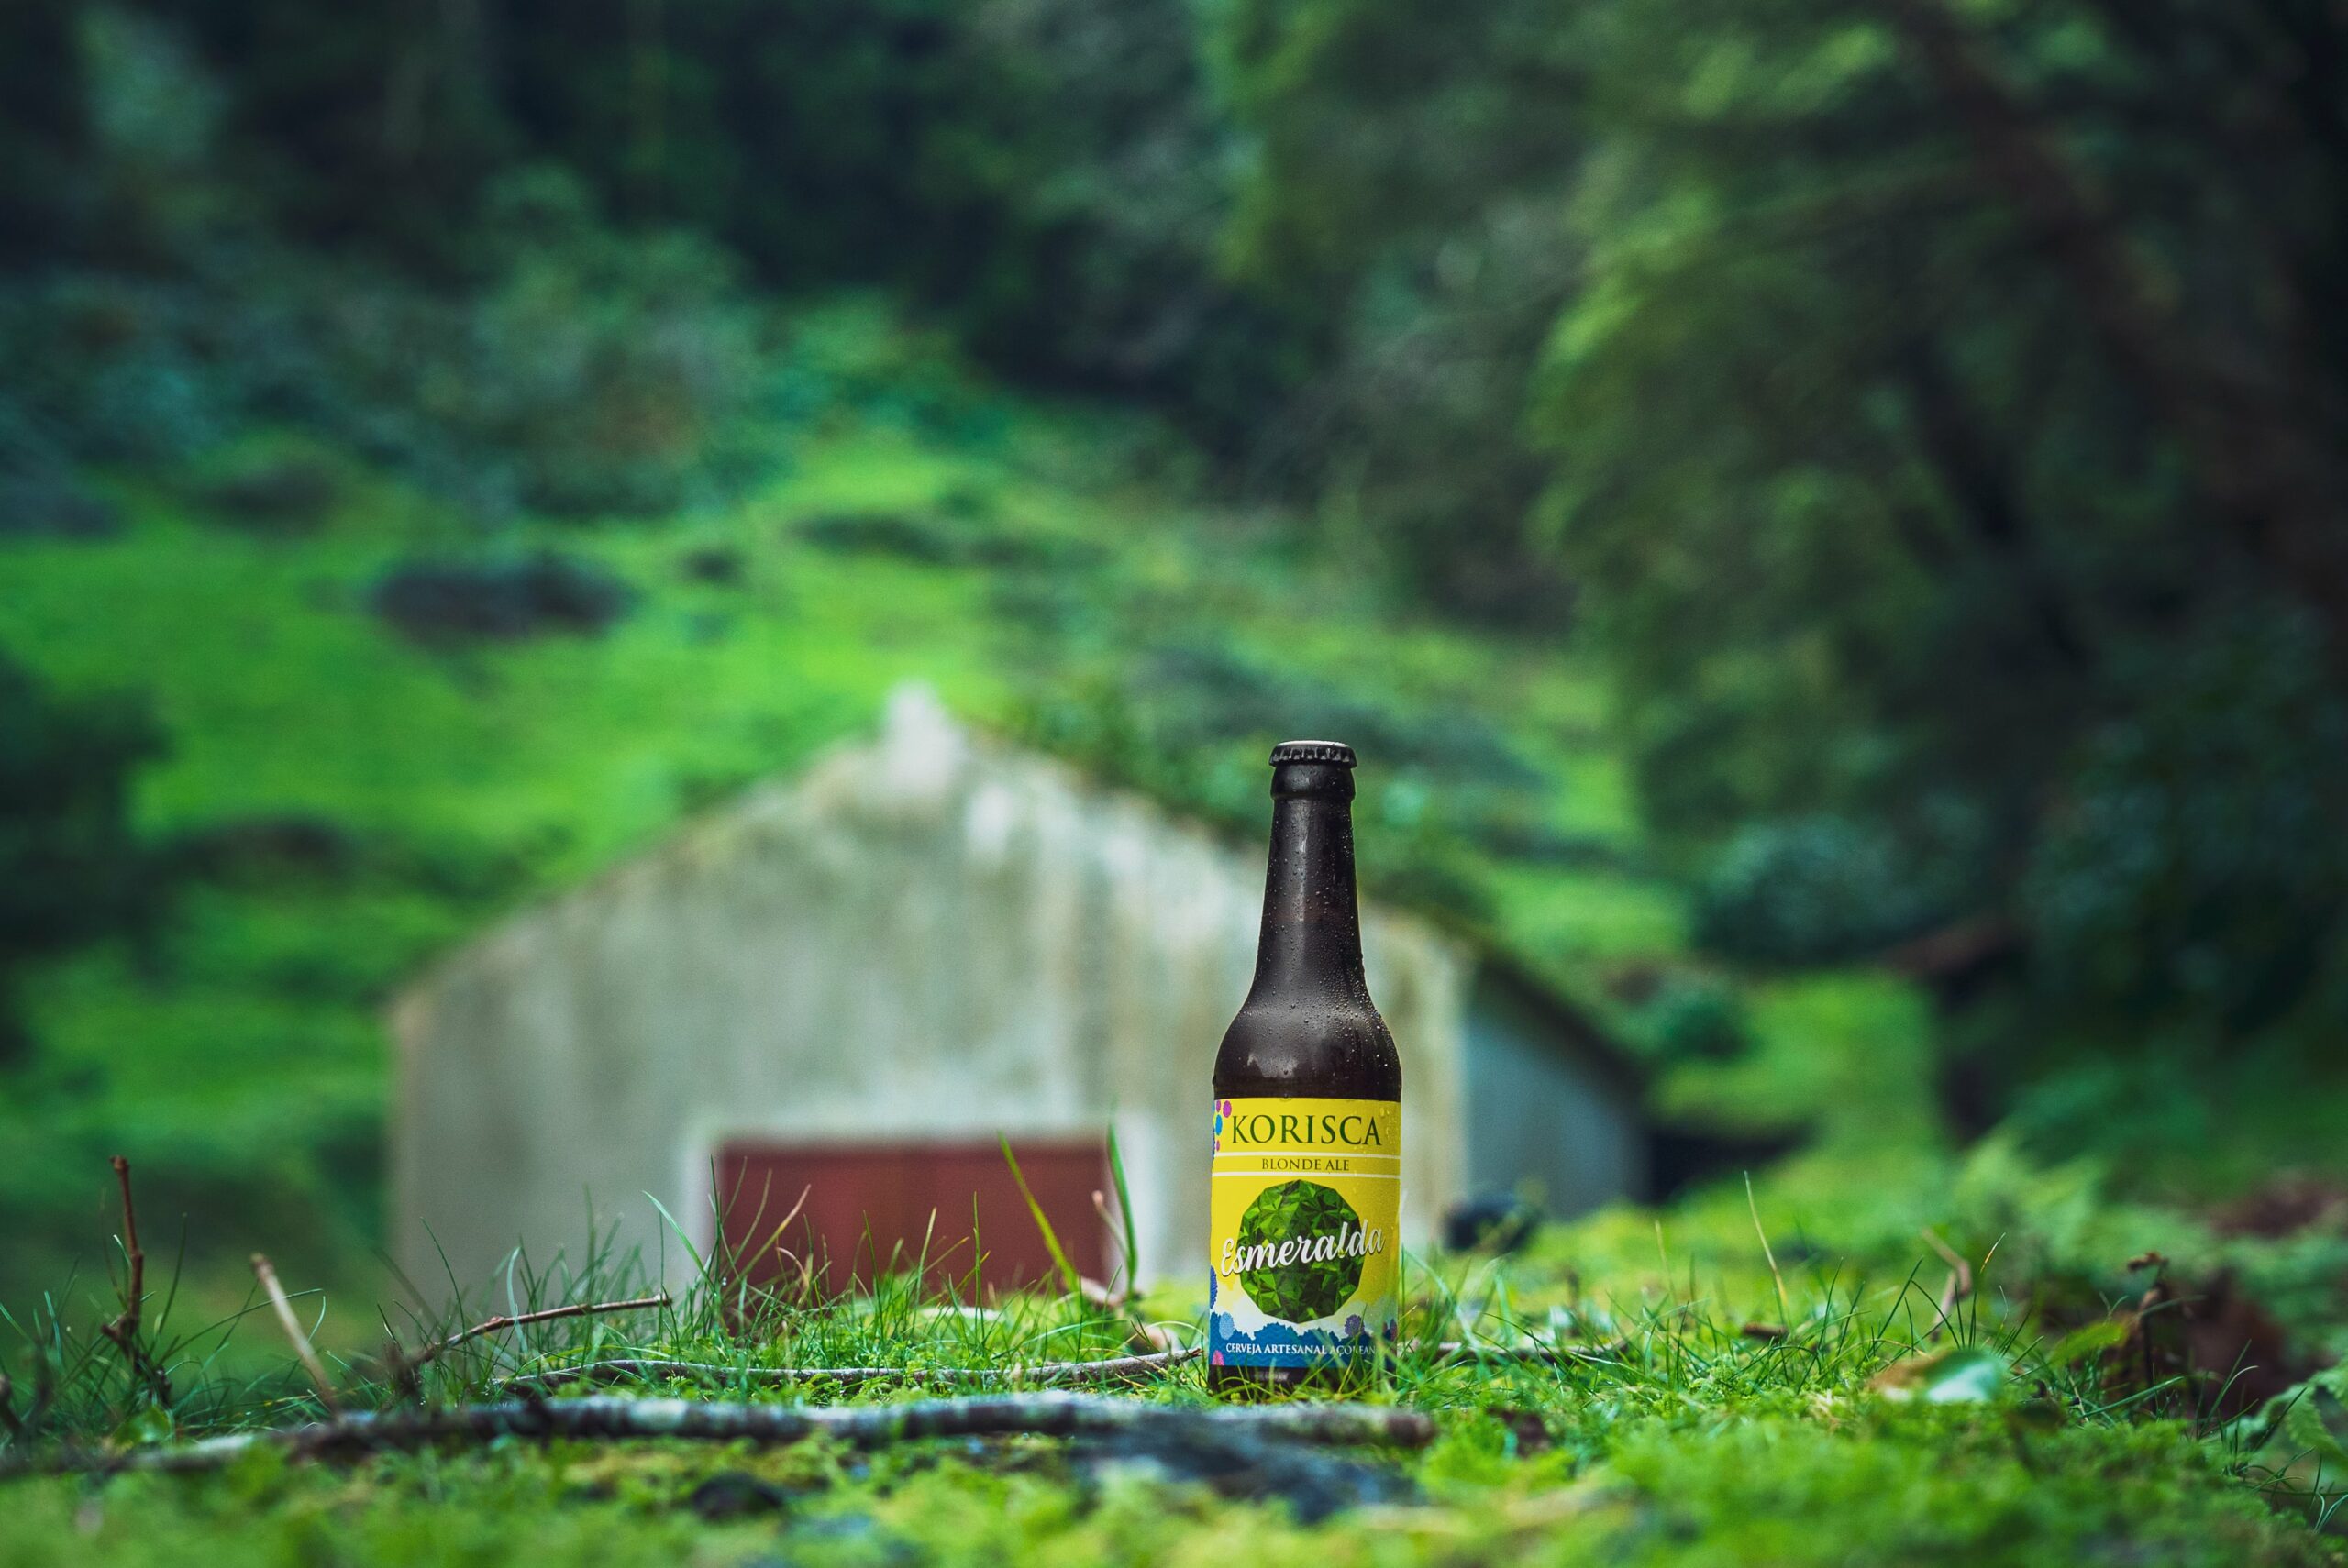 Cerveja artesanal açoriana Korisca Esmeralda (Blonde Ale), em chão verde, com uma casa, árvores e vegetação verde, nas Sete Cidades, Ponta Delgada, São Miguel, Açores.